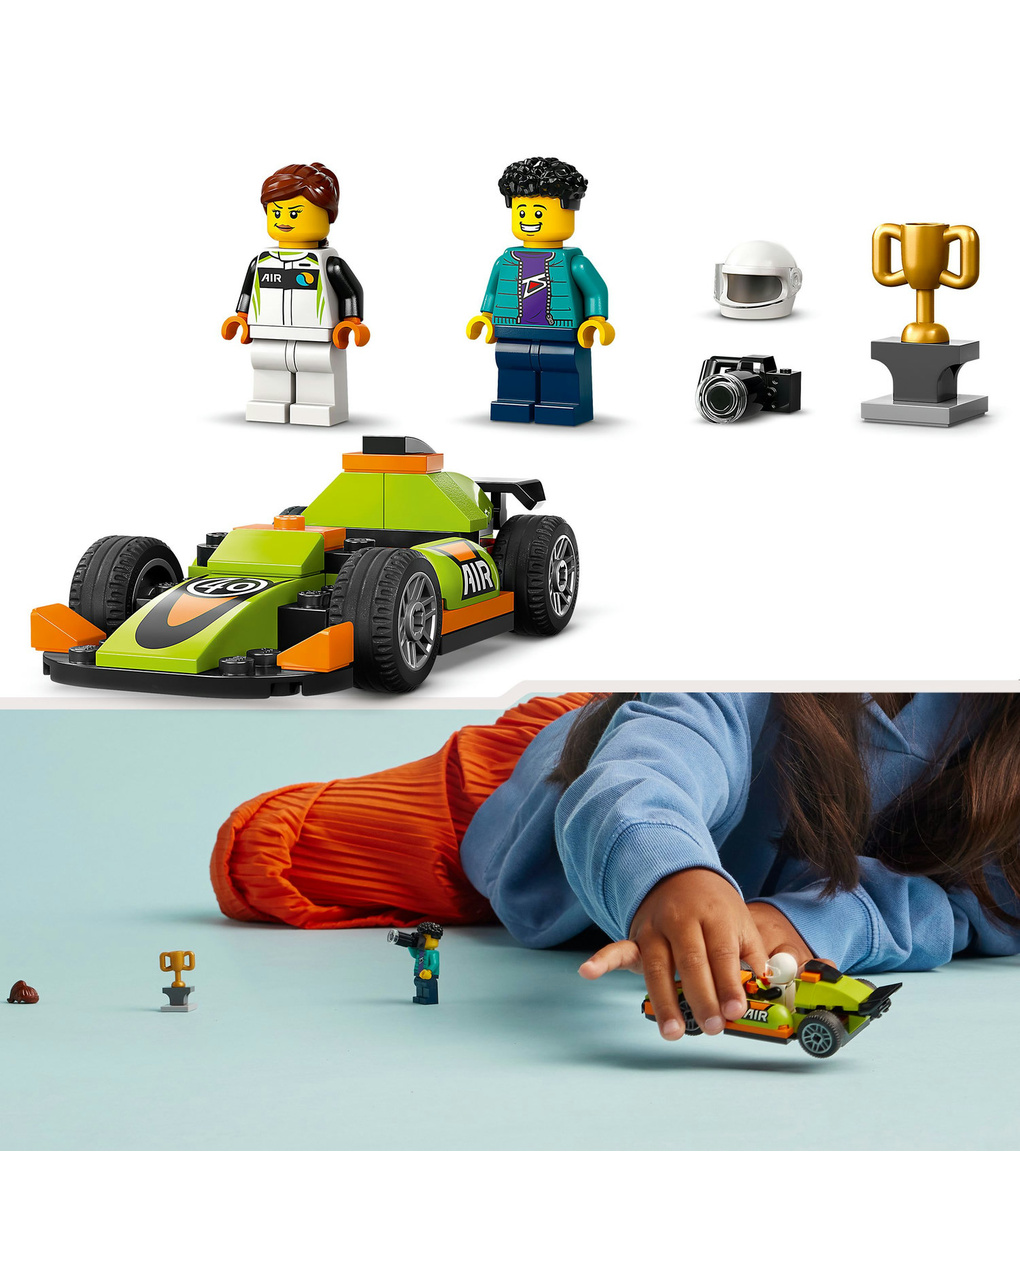 Auto da corsa verde - 60399 - lego city - LEGO